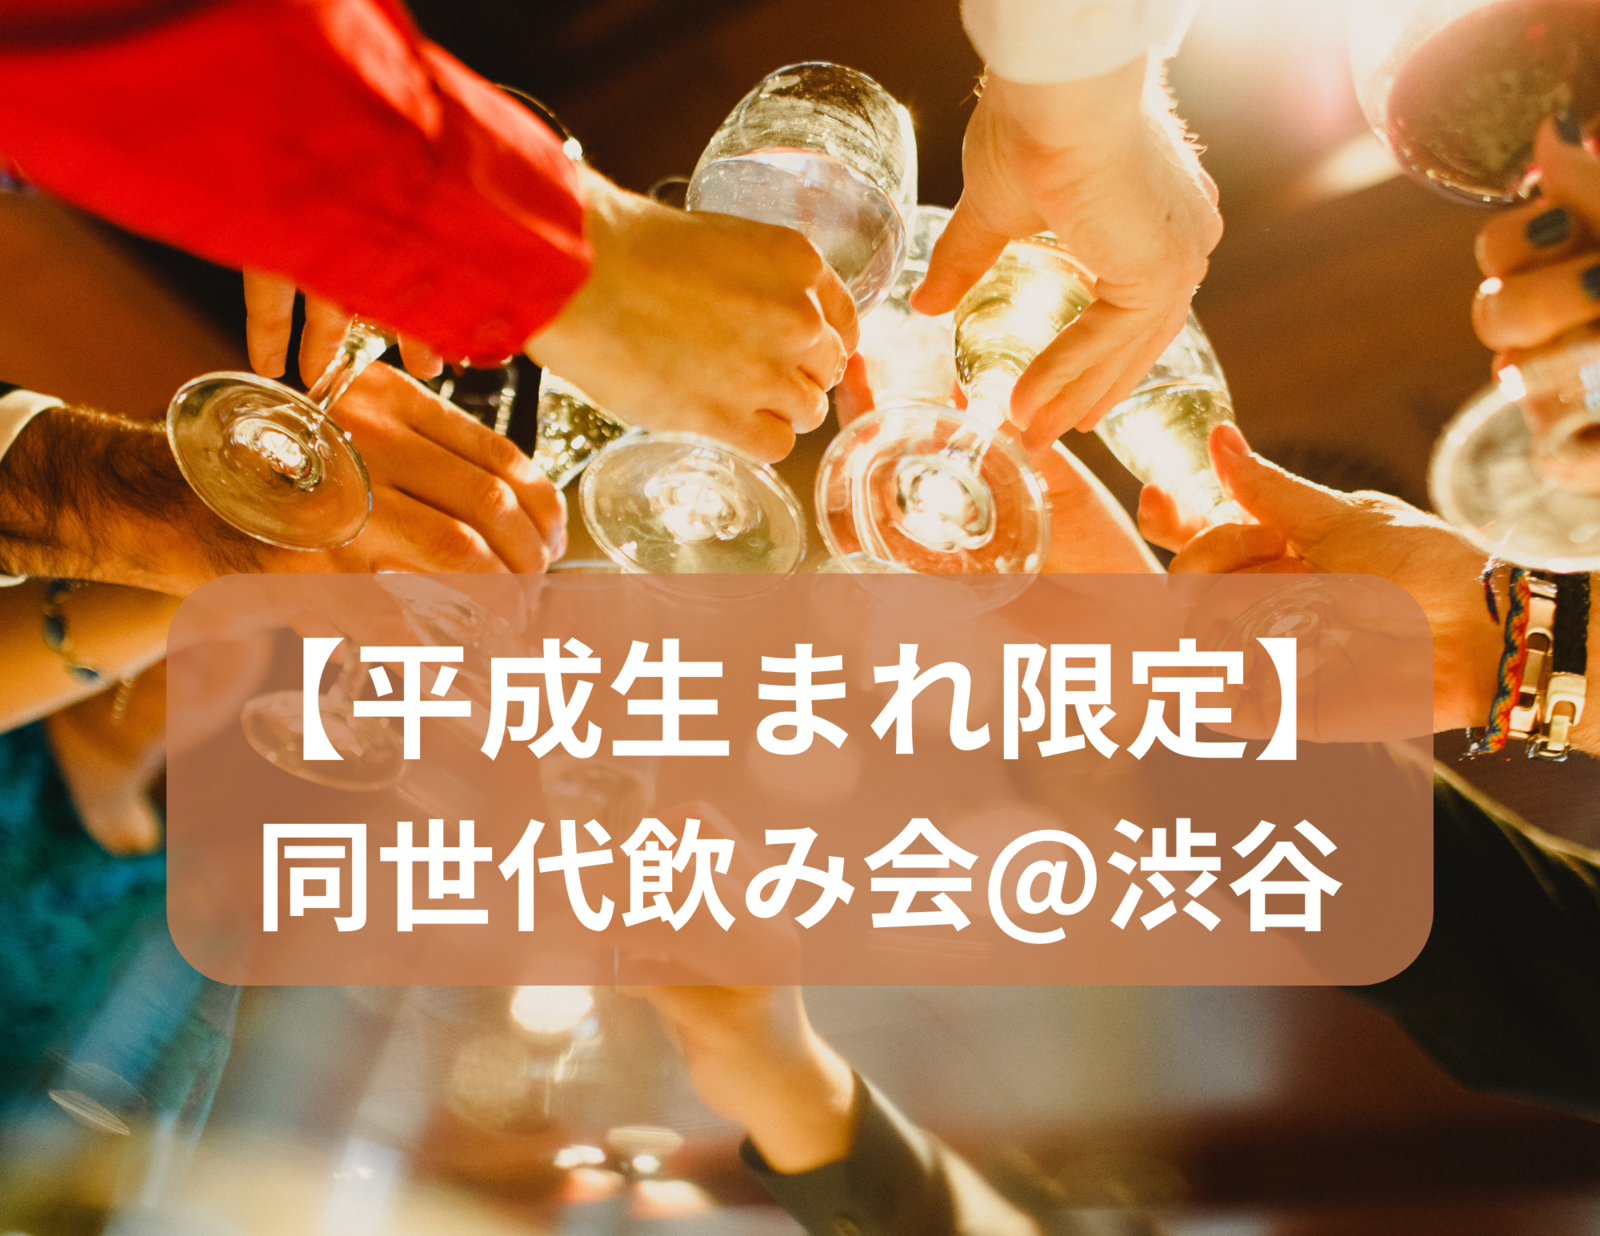 【平成生まれ限定】同世代飲み会🍻✨@渋谷